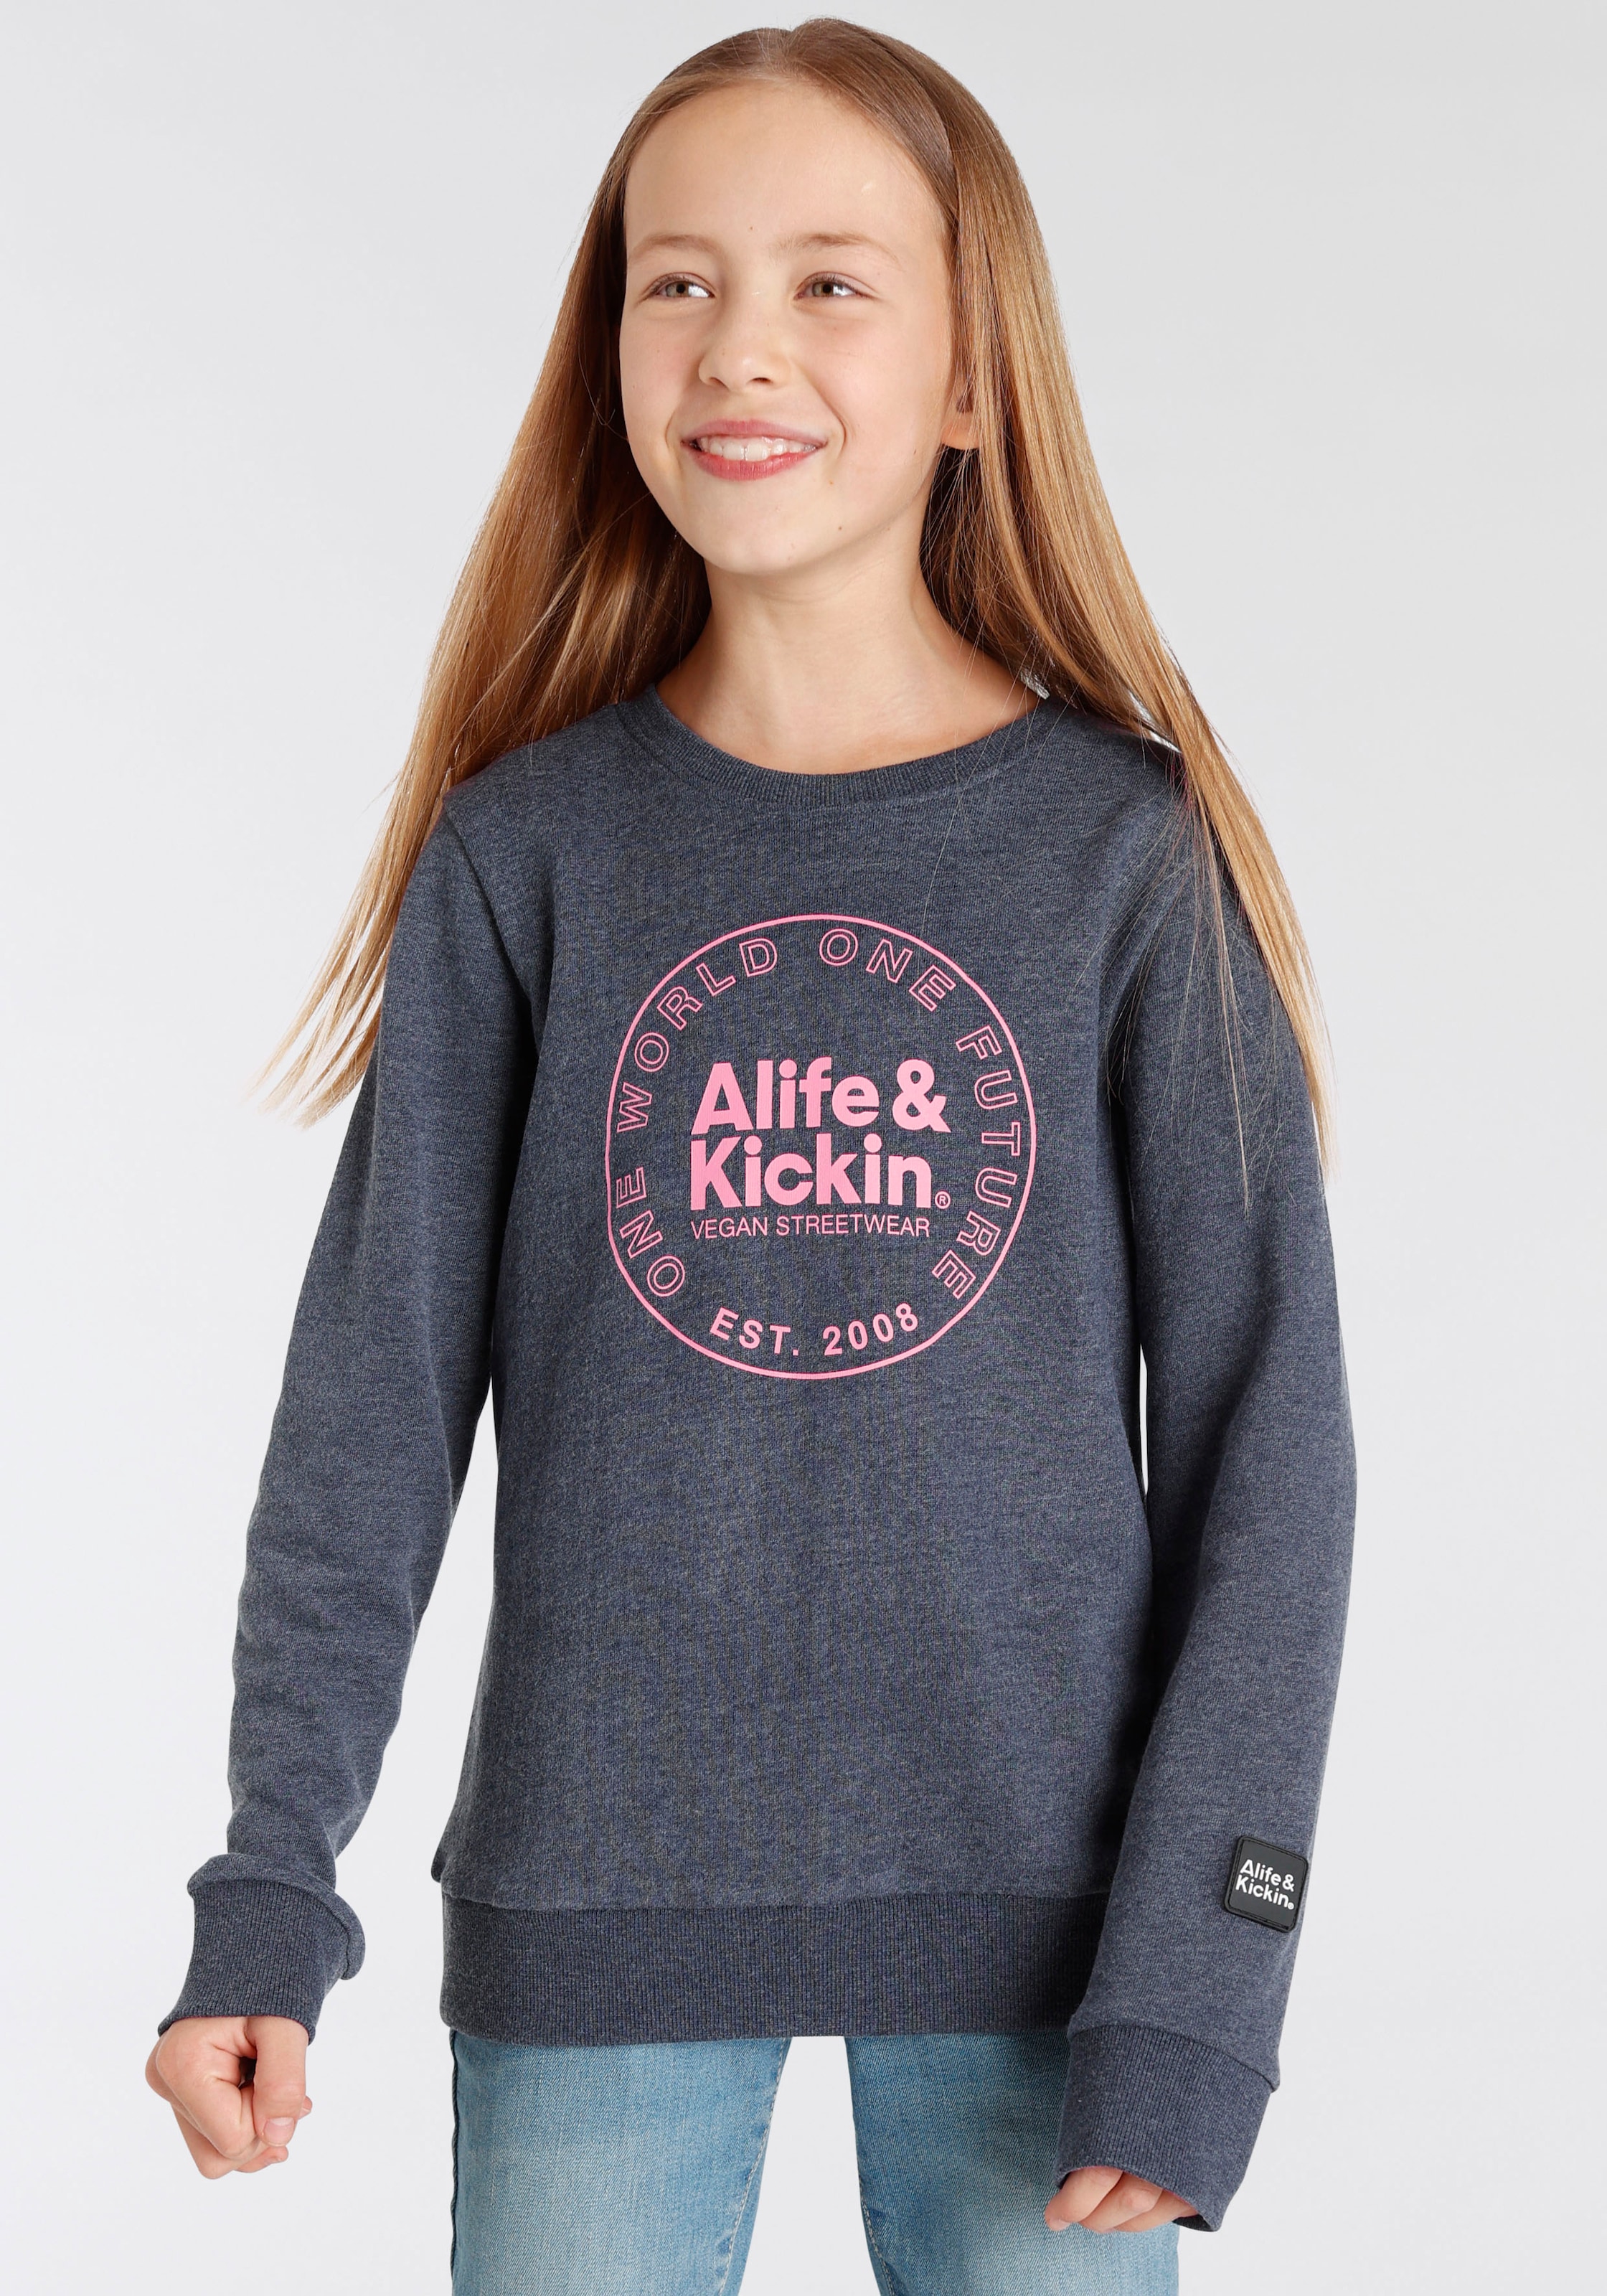 Kickin Sweatshirt Alife & & Druck«, Kickin MARKE! kaufen für Kids. Alife NEUE Logo online »mit